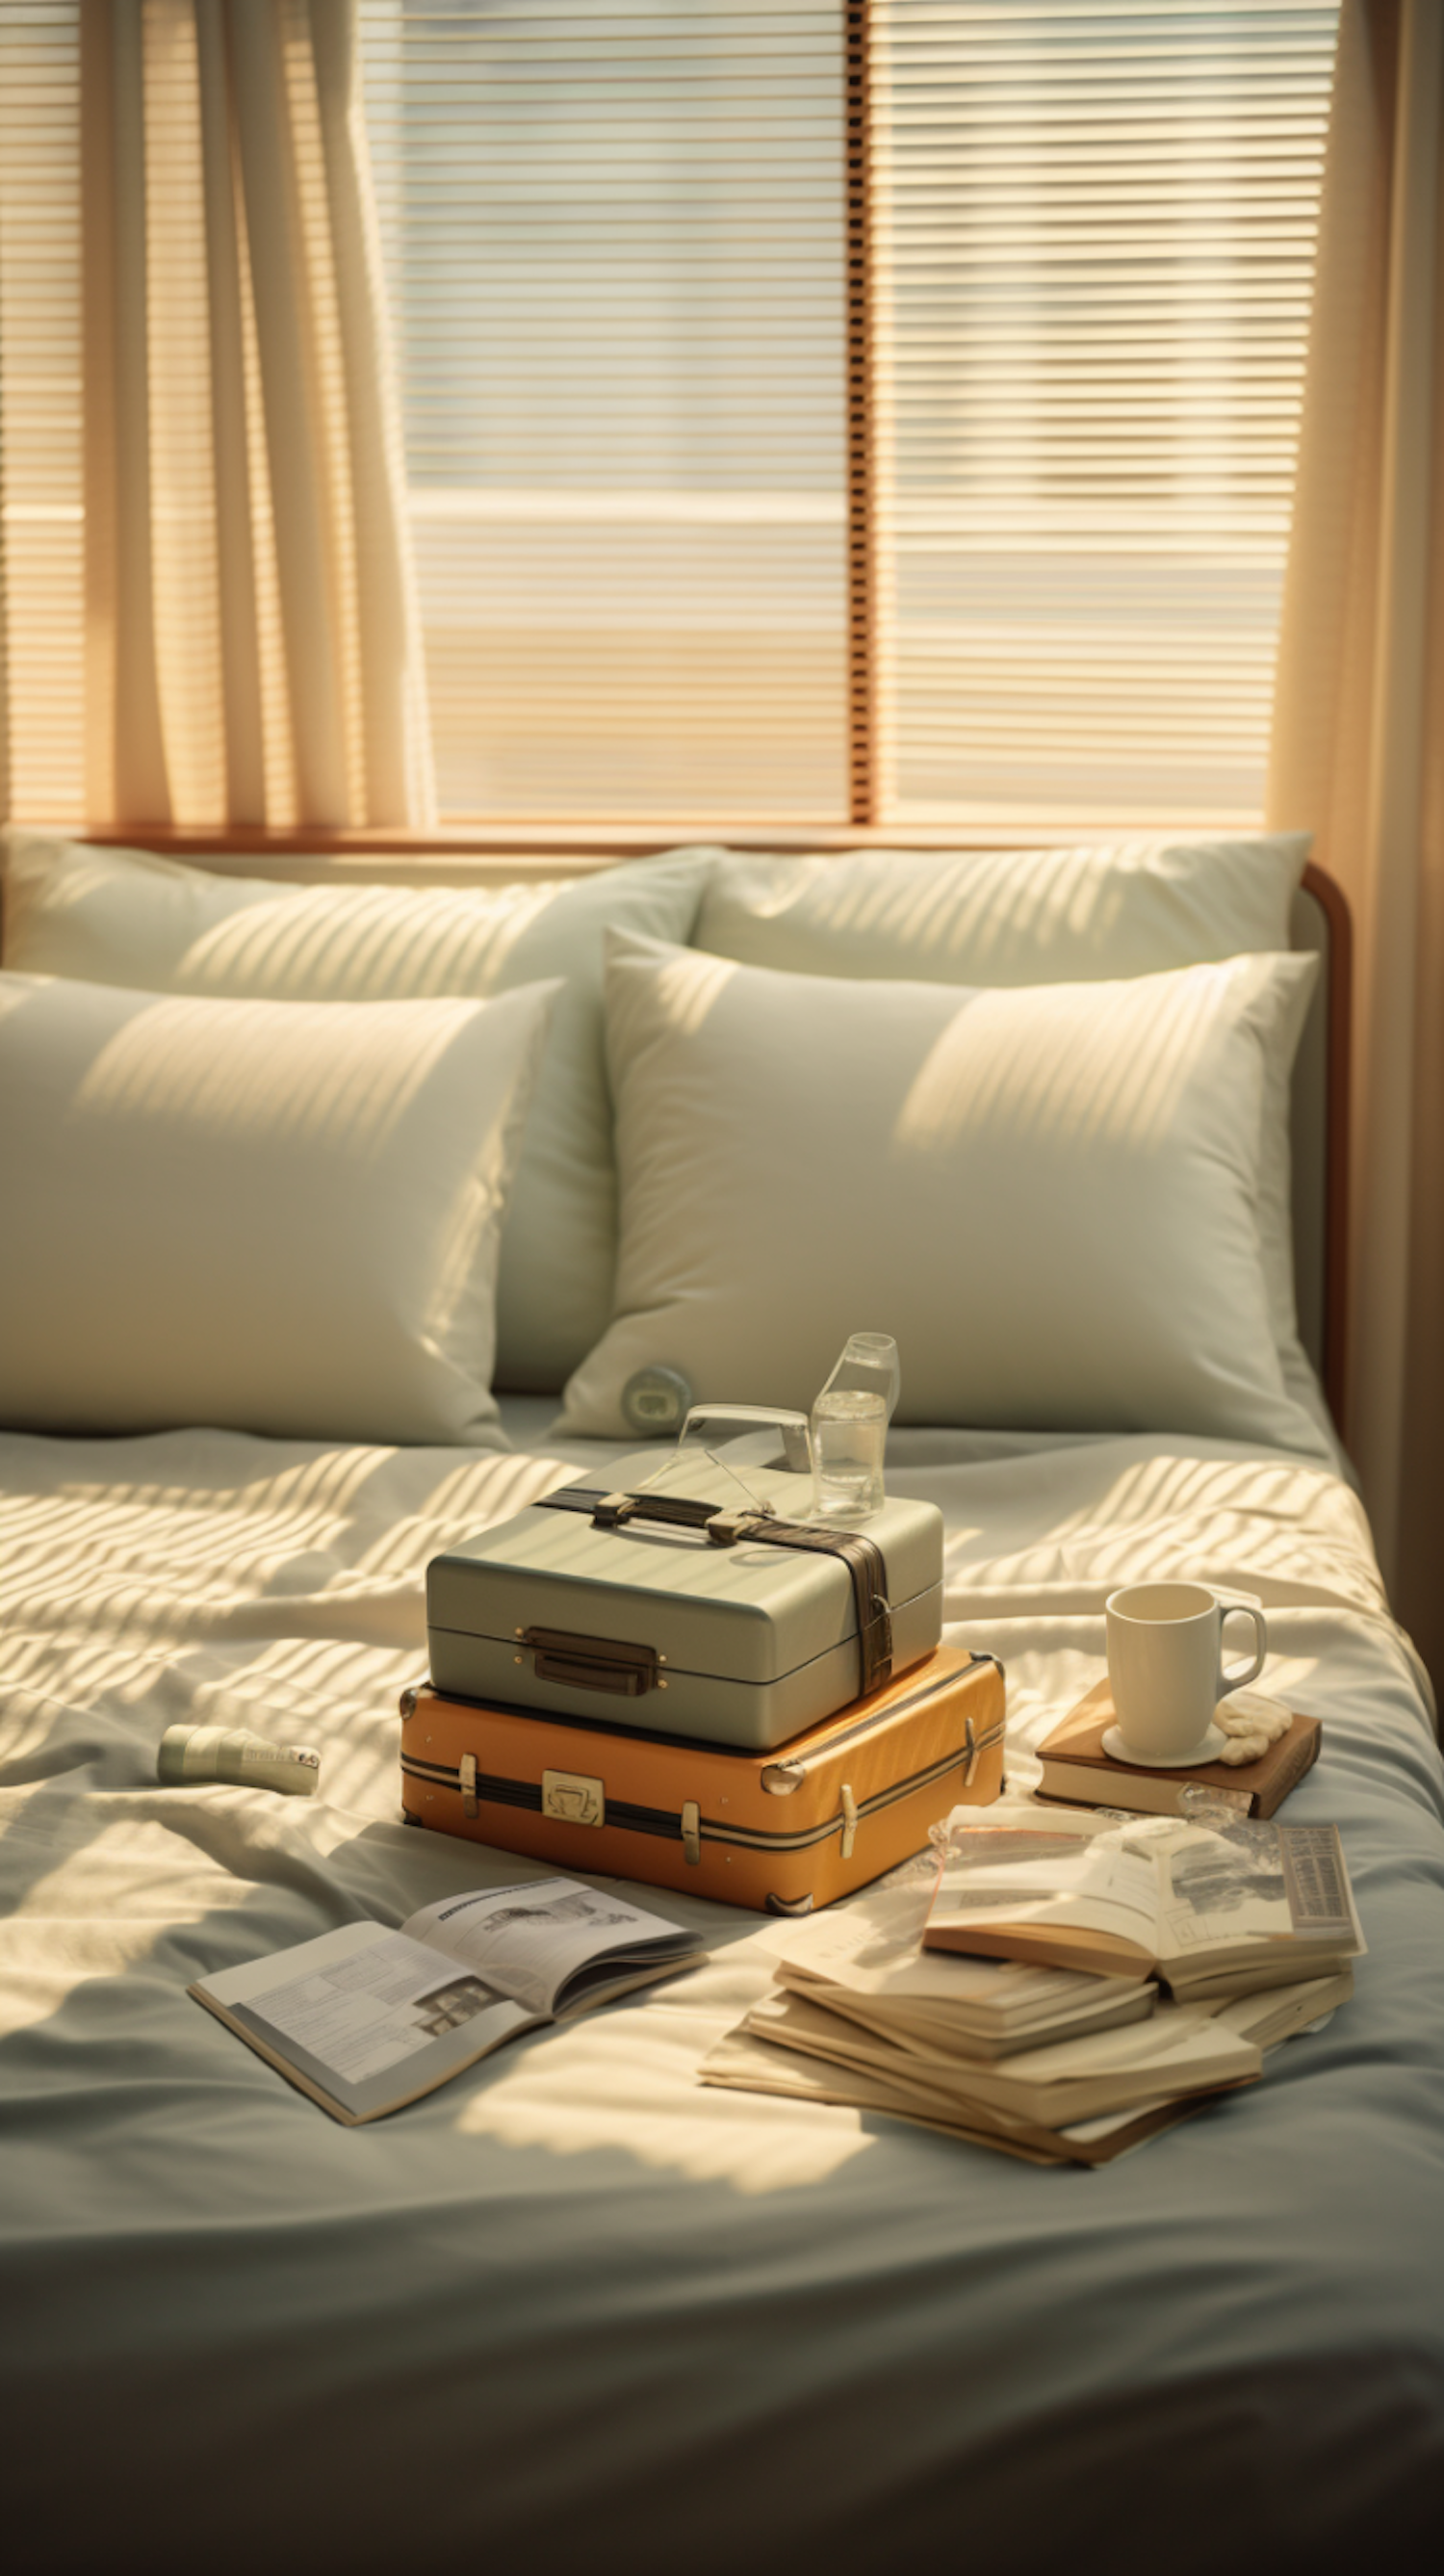 Sunlit Serenity: A Traveler's Cozy Bedroom Retreat